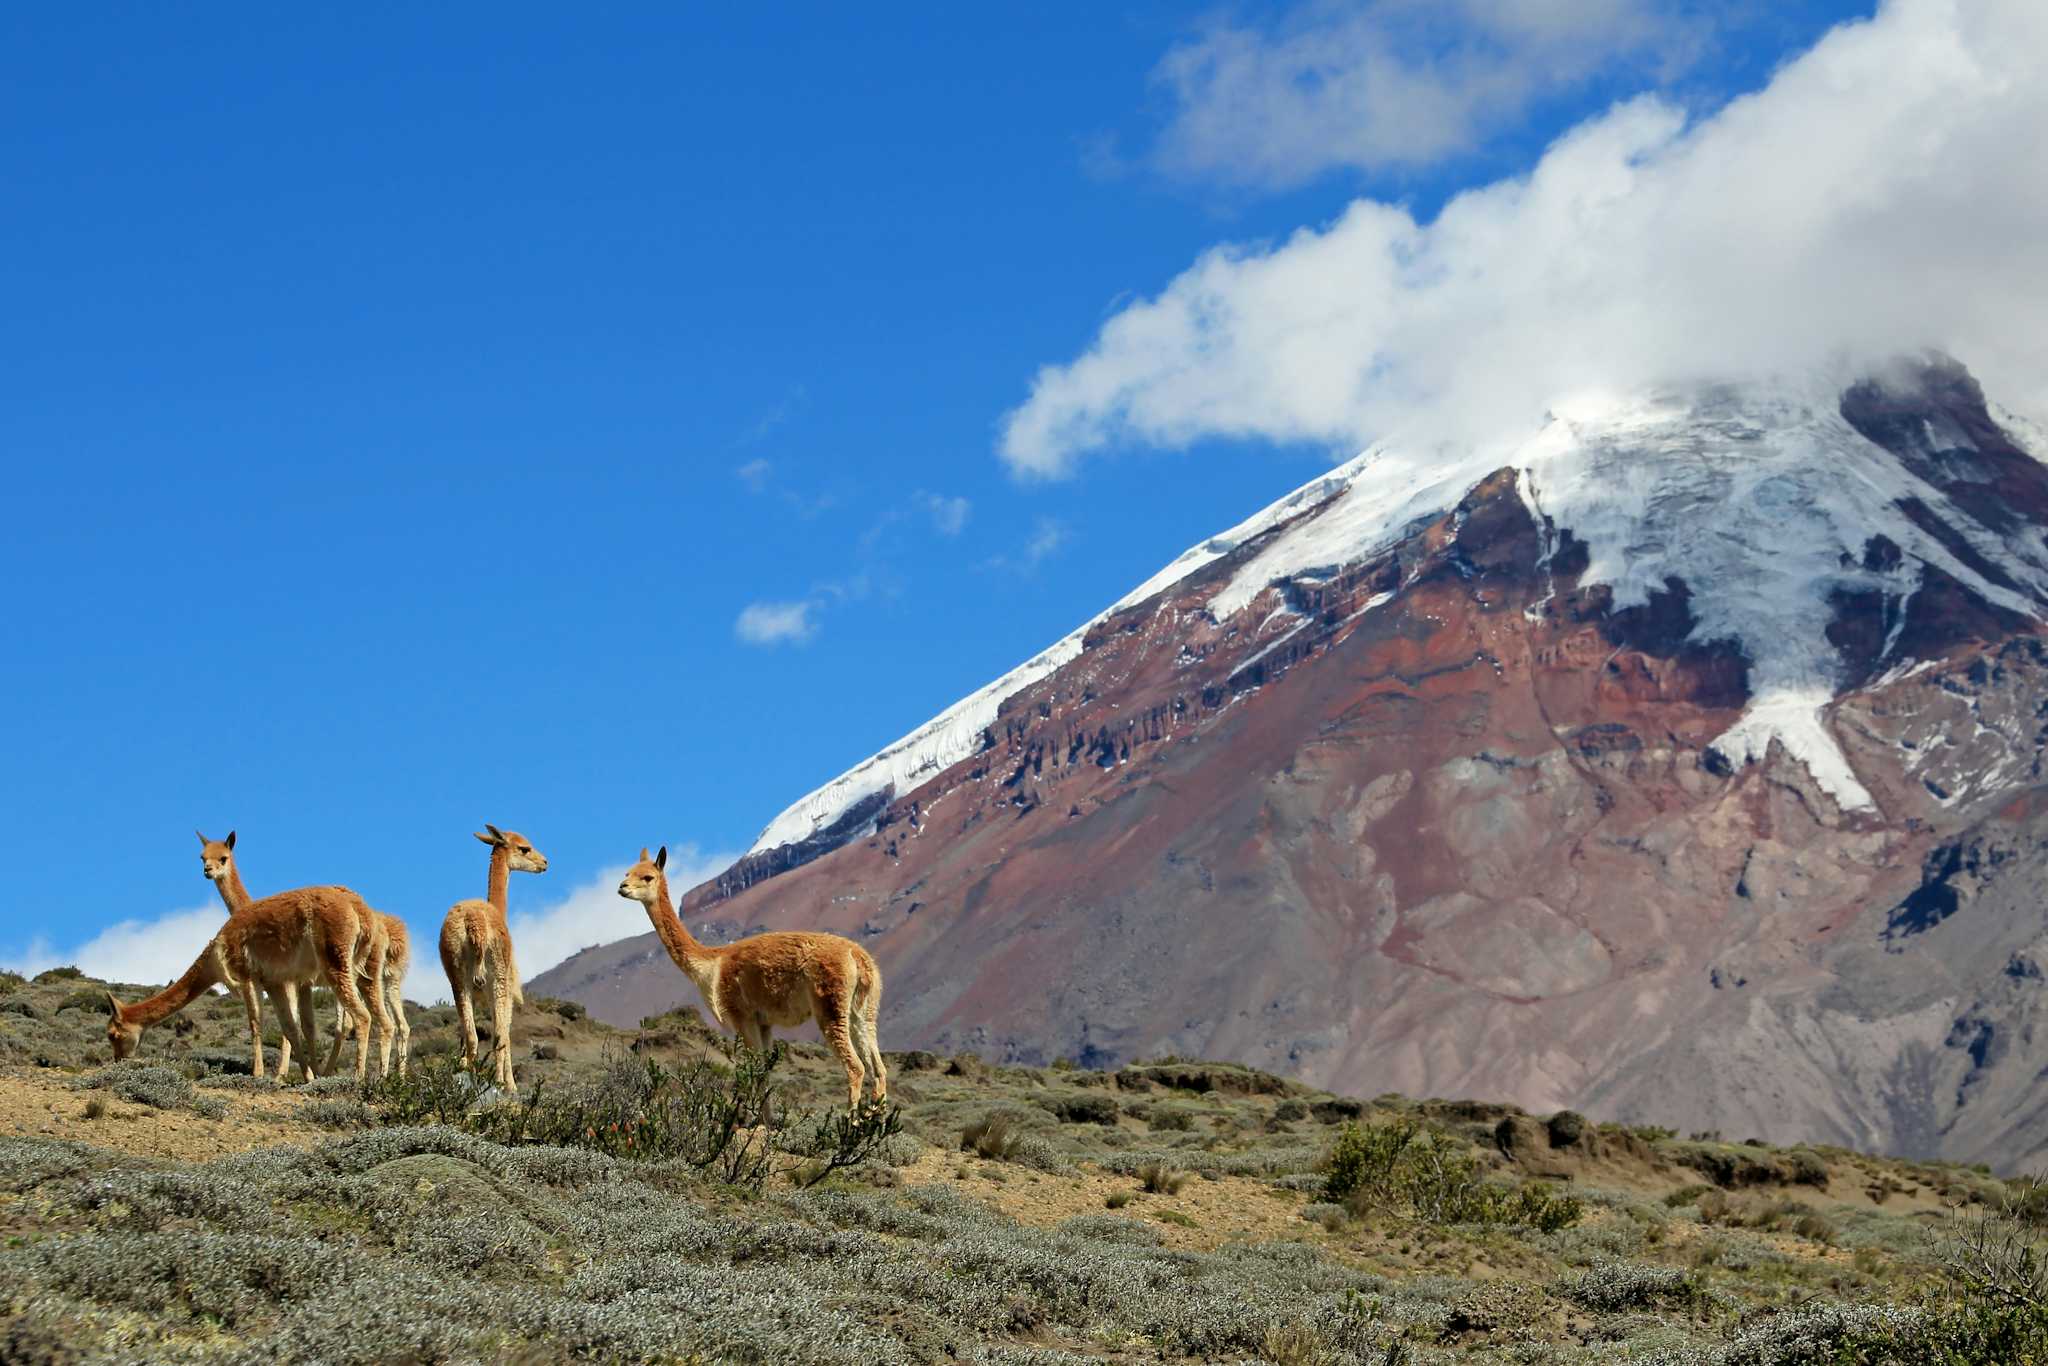 Chimborazo Wildlife Reserve